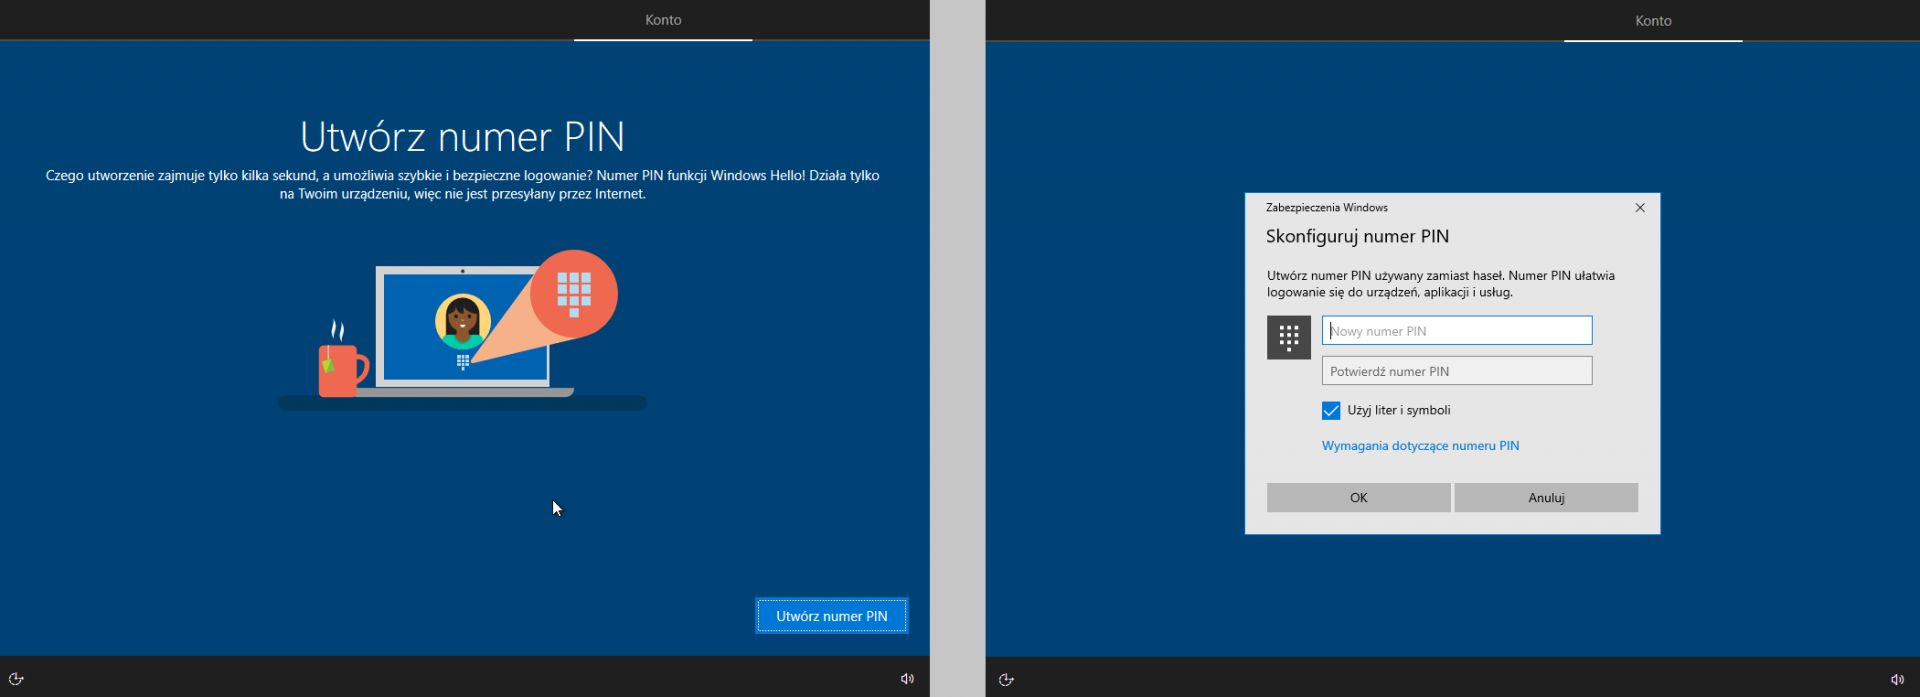 Windows 10 instalacja i ustawienia prywatności. Krok 2.